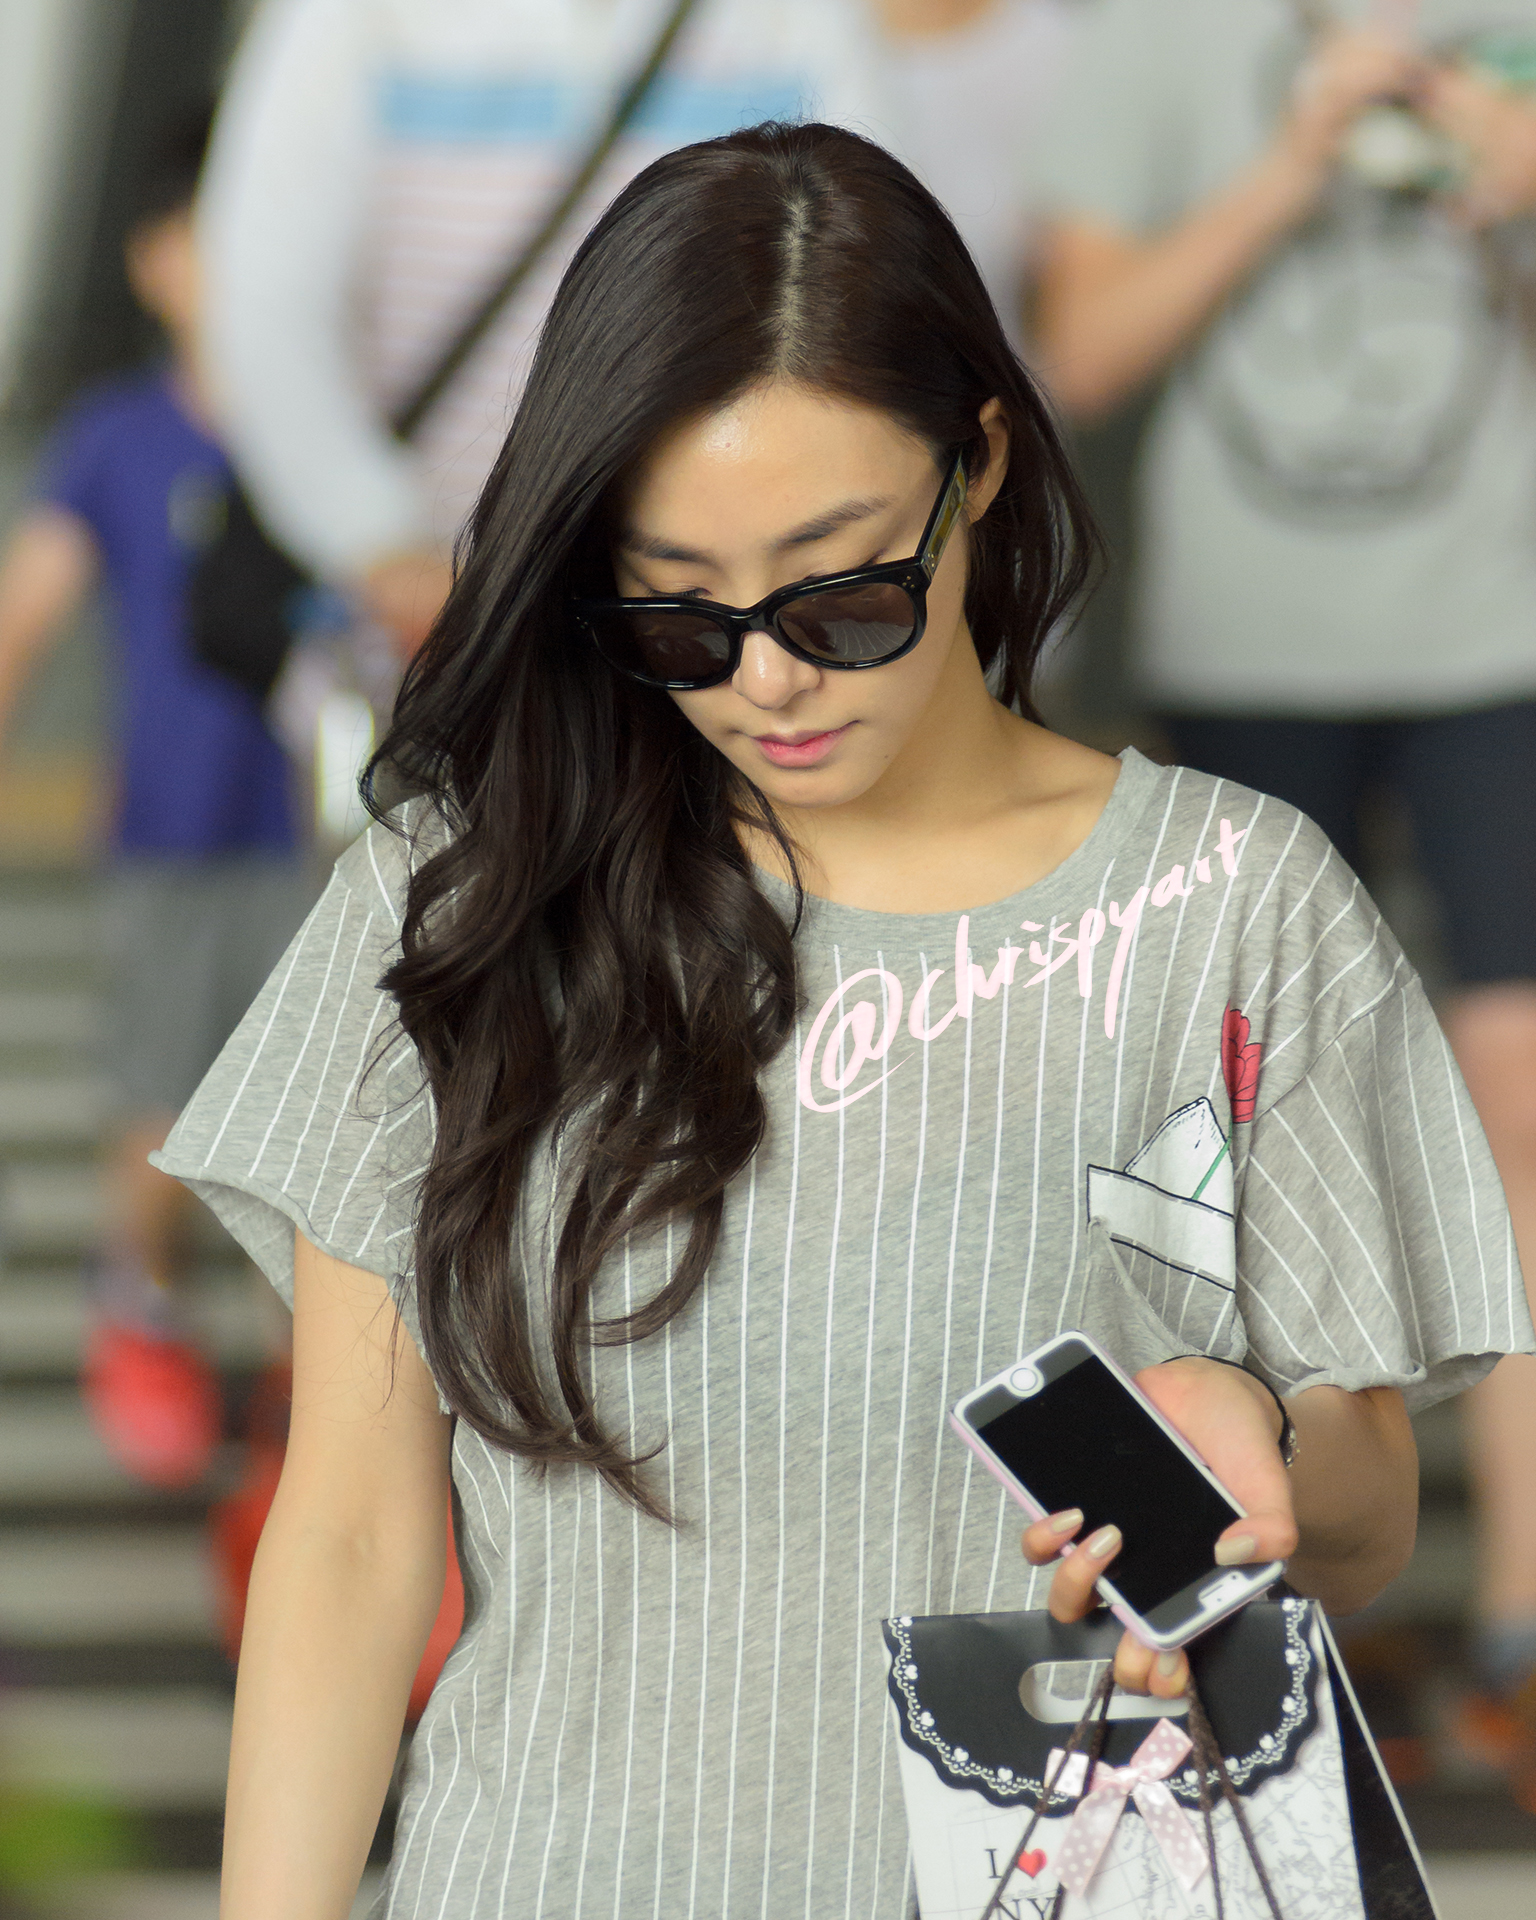 [PIC][18-08-2015]Tiffany trở về Hàn Quốc vào chiều nay Dsc_6274-kopie2